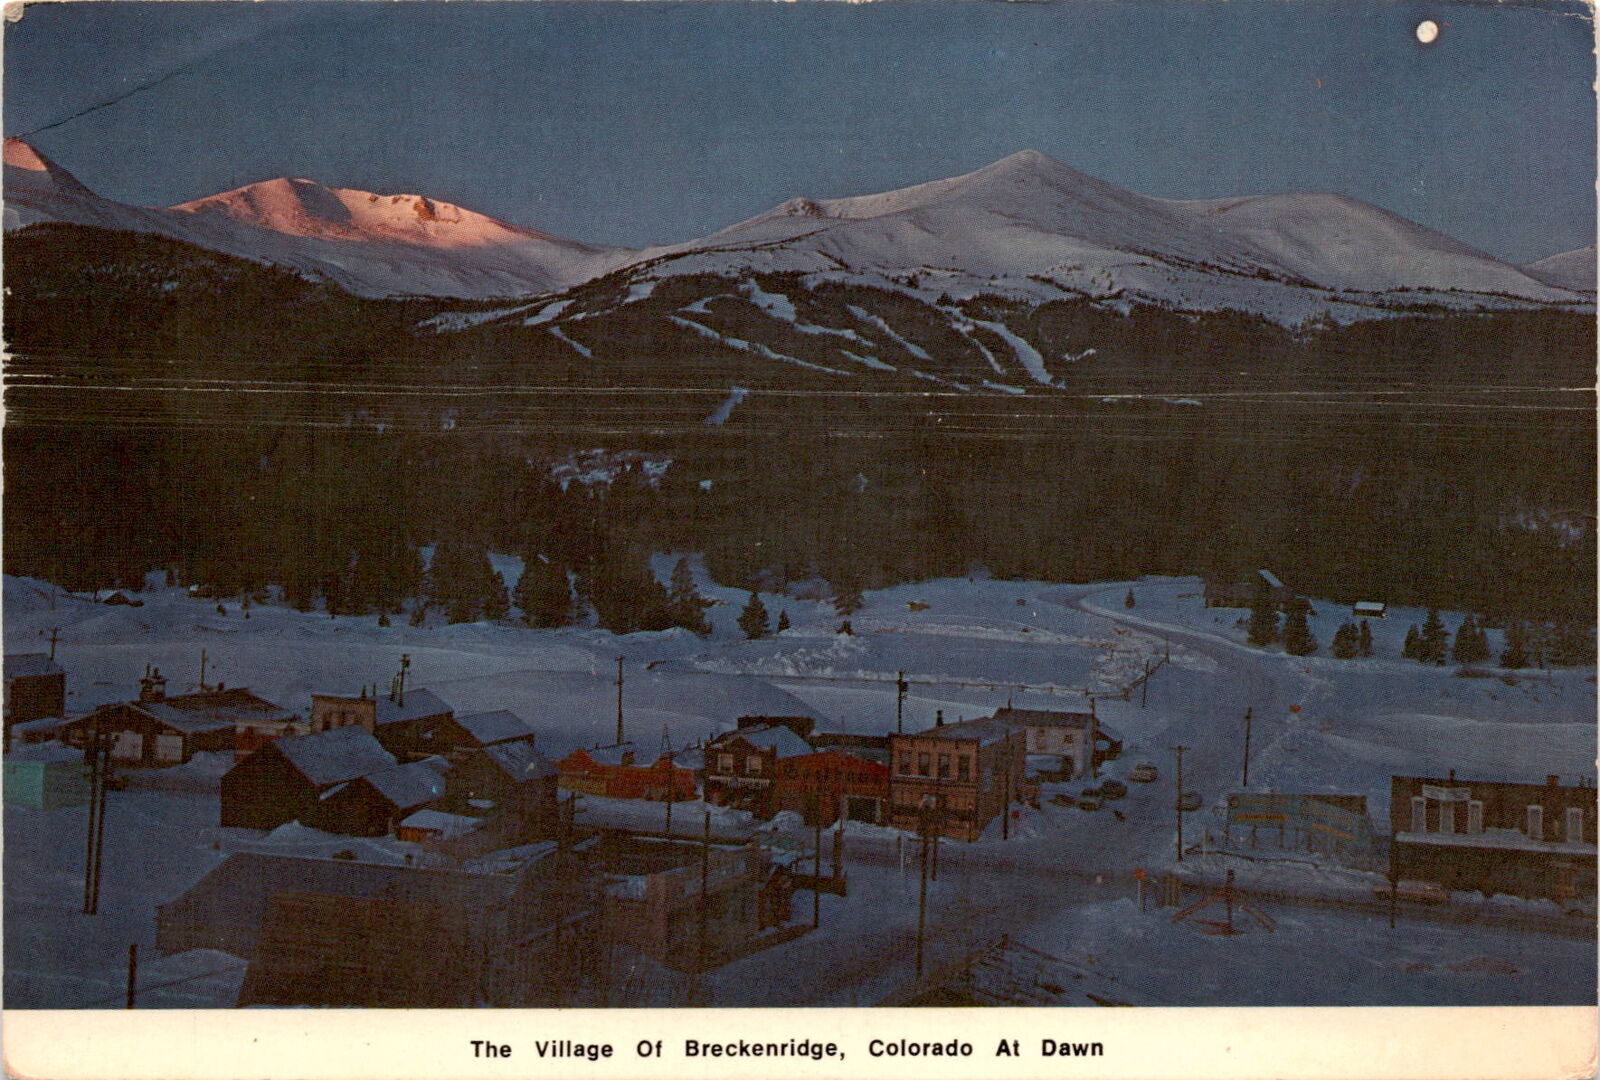 Breckenridge, Colorado, dawn, ski area, U.S. Highway 6, Colorado Postcard